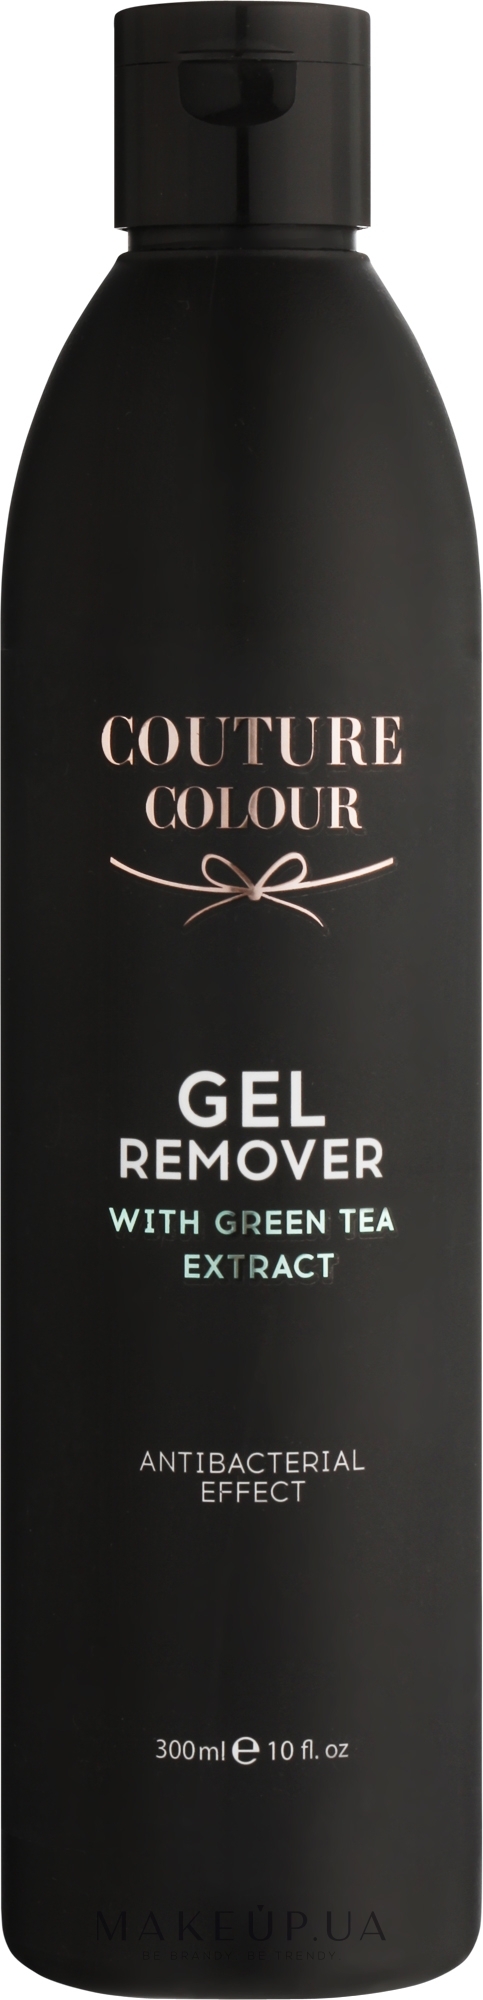 Средство для удаления геля и гель-лака с экстрактом зелёного чая - Couture Colour Gel Remover with Green Tea Extract — фото 300ml